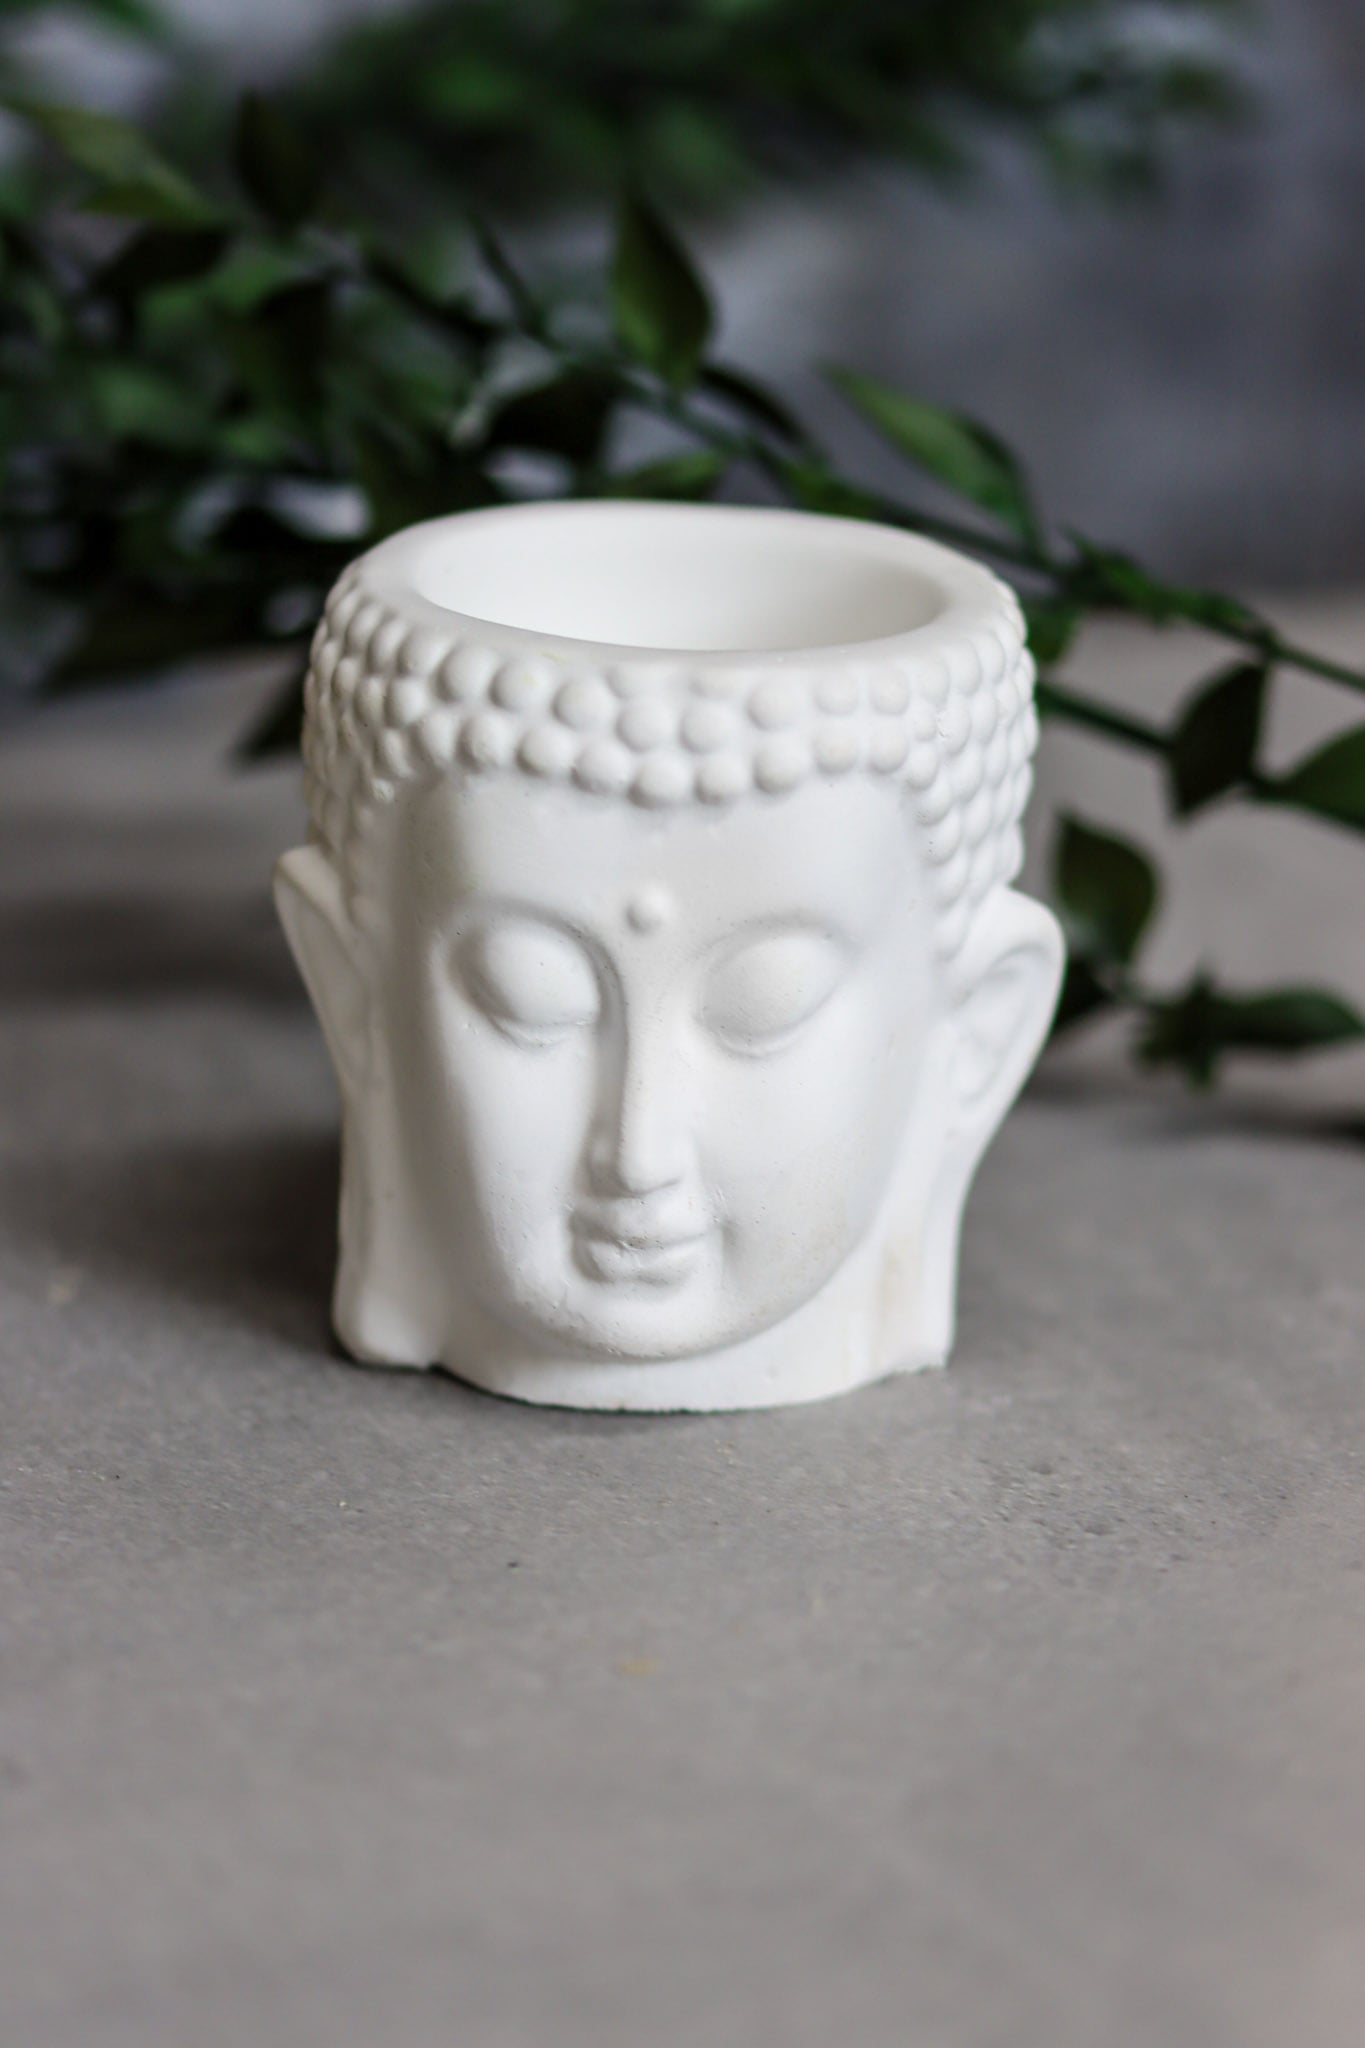 Buddha Duftöl Meditation Yoga relax Beton frostsicher weiß Kerzen Kerzenhalter meditieren